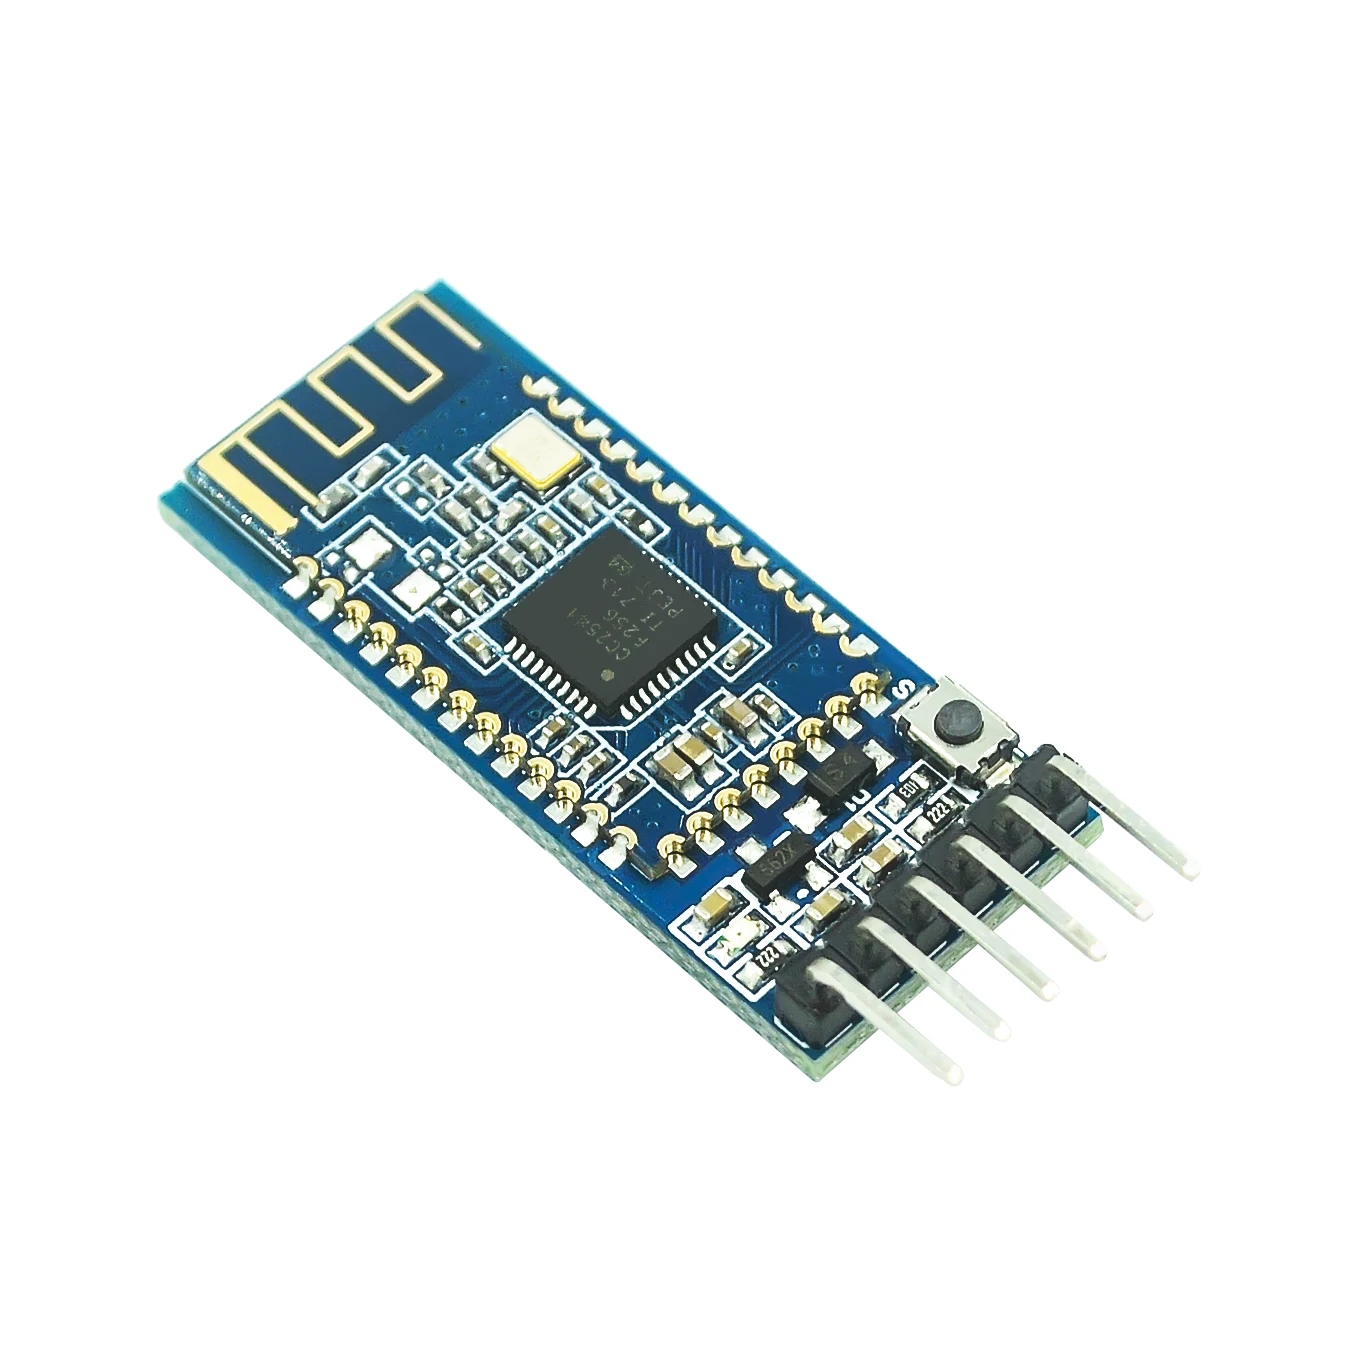 CC2540 CC2541 AT-09 Lot de 2 modules Bluetooth 4.0 BLE BLE 4.0 Module Bluetooth AT-09 série sans fil compatible avec HM-10 pour Arduino